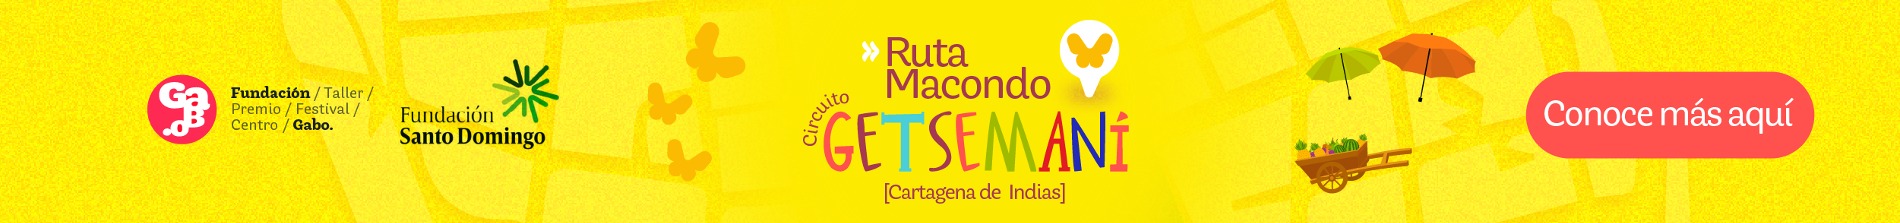 Banner Ruta Macondo: circuito Getsemaní, Cartagena de Indias